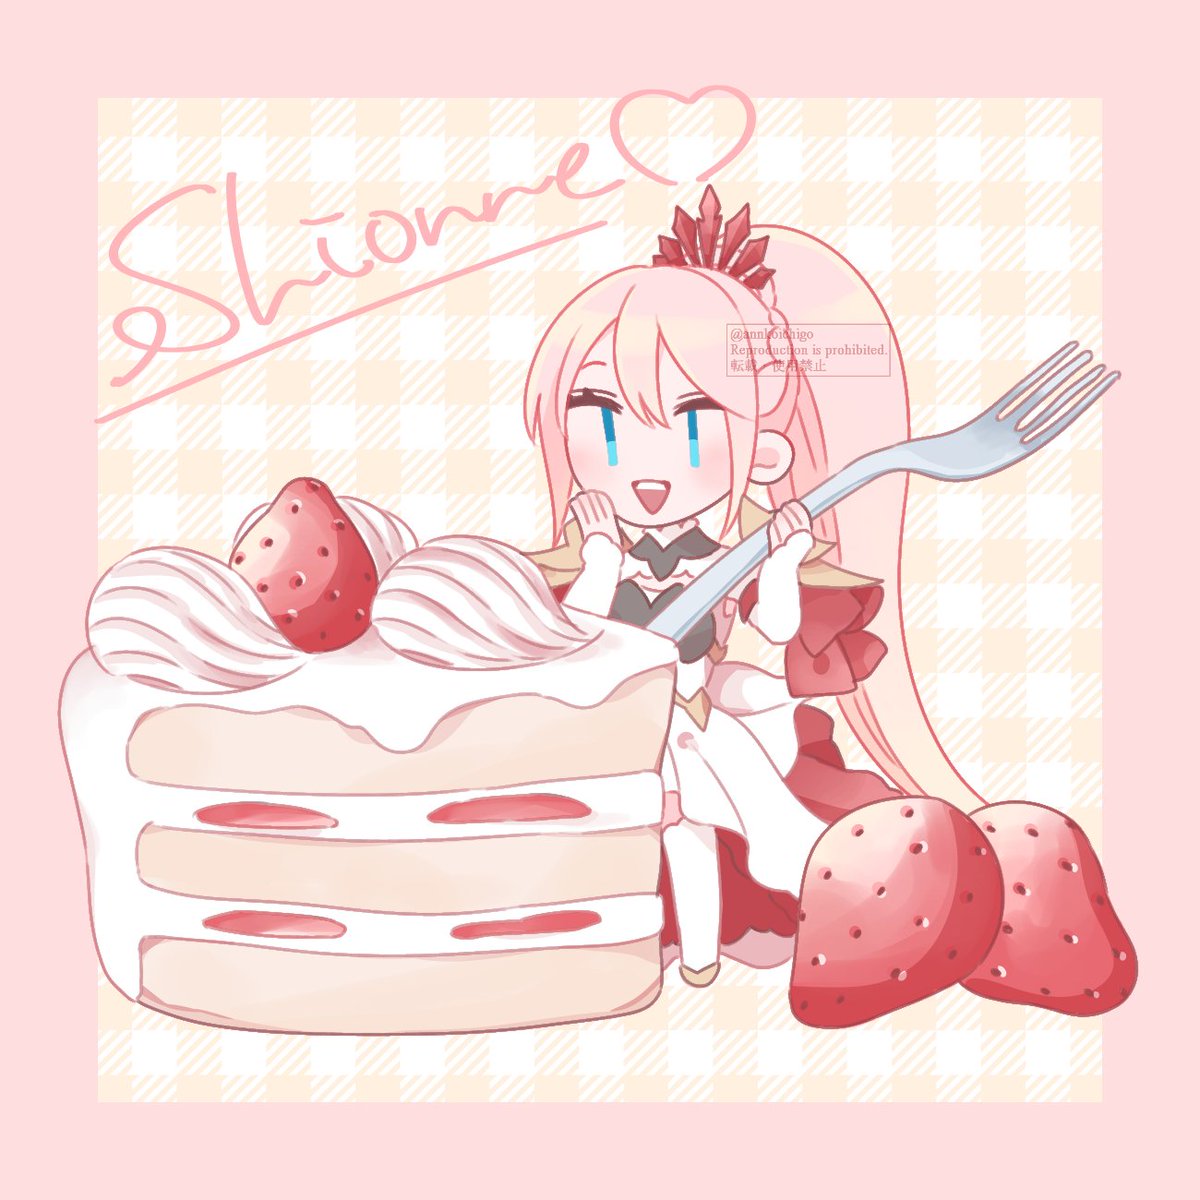 「シオン/ショートケーキ 」|苺あんこのイラスト